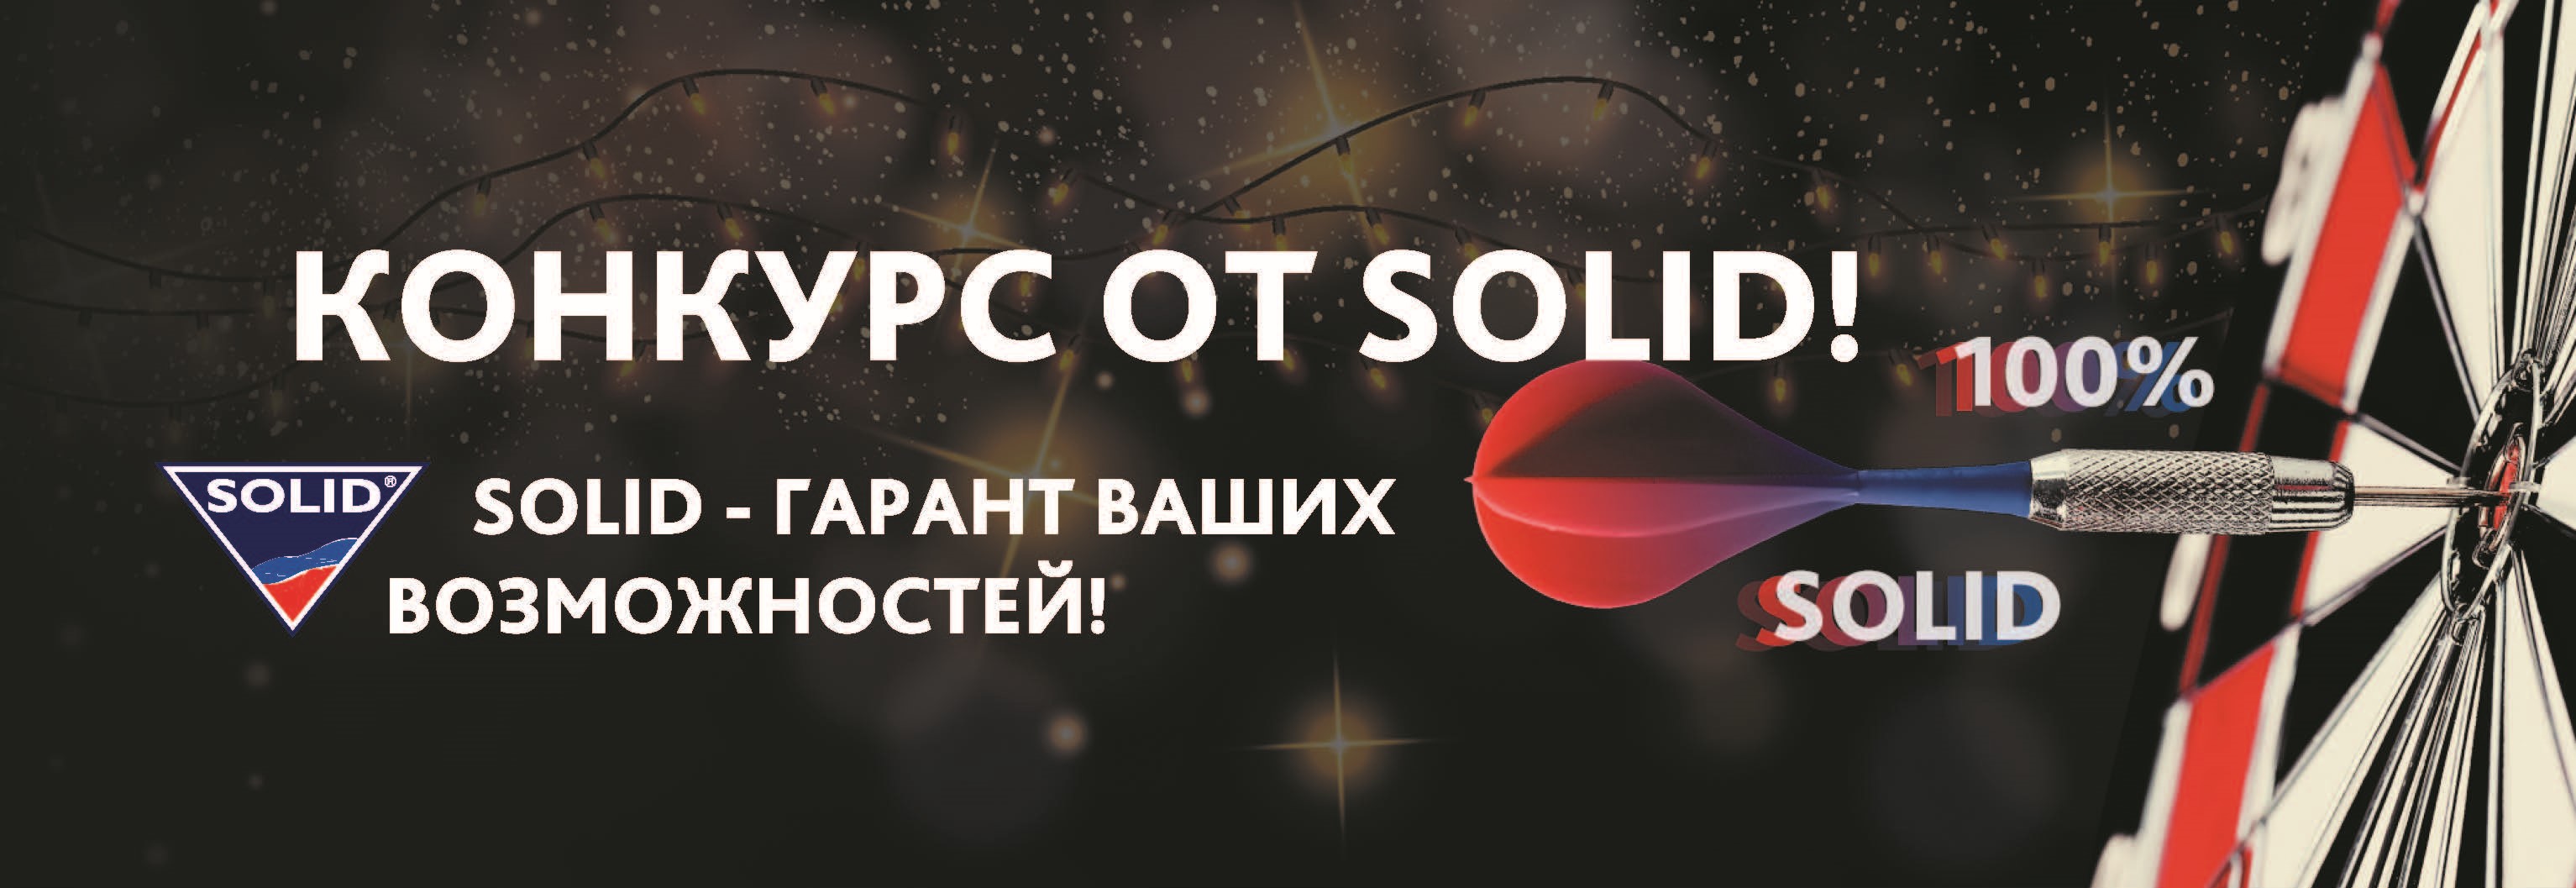 Анонс конкурса Solid от нашего партнера из Пятигорска!